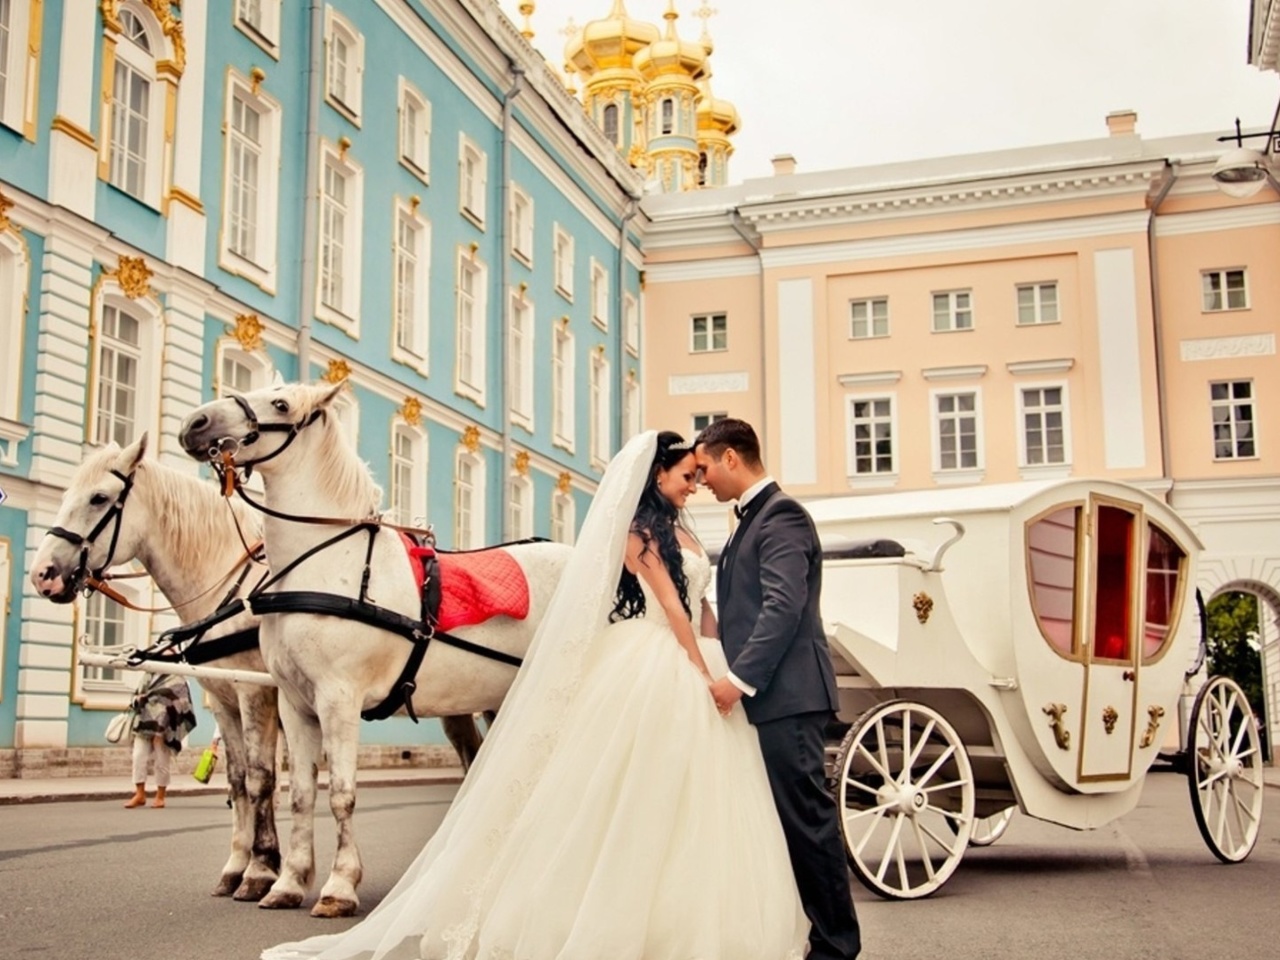 Fondo de pantalla Wedding in carriage 1280x960